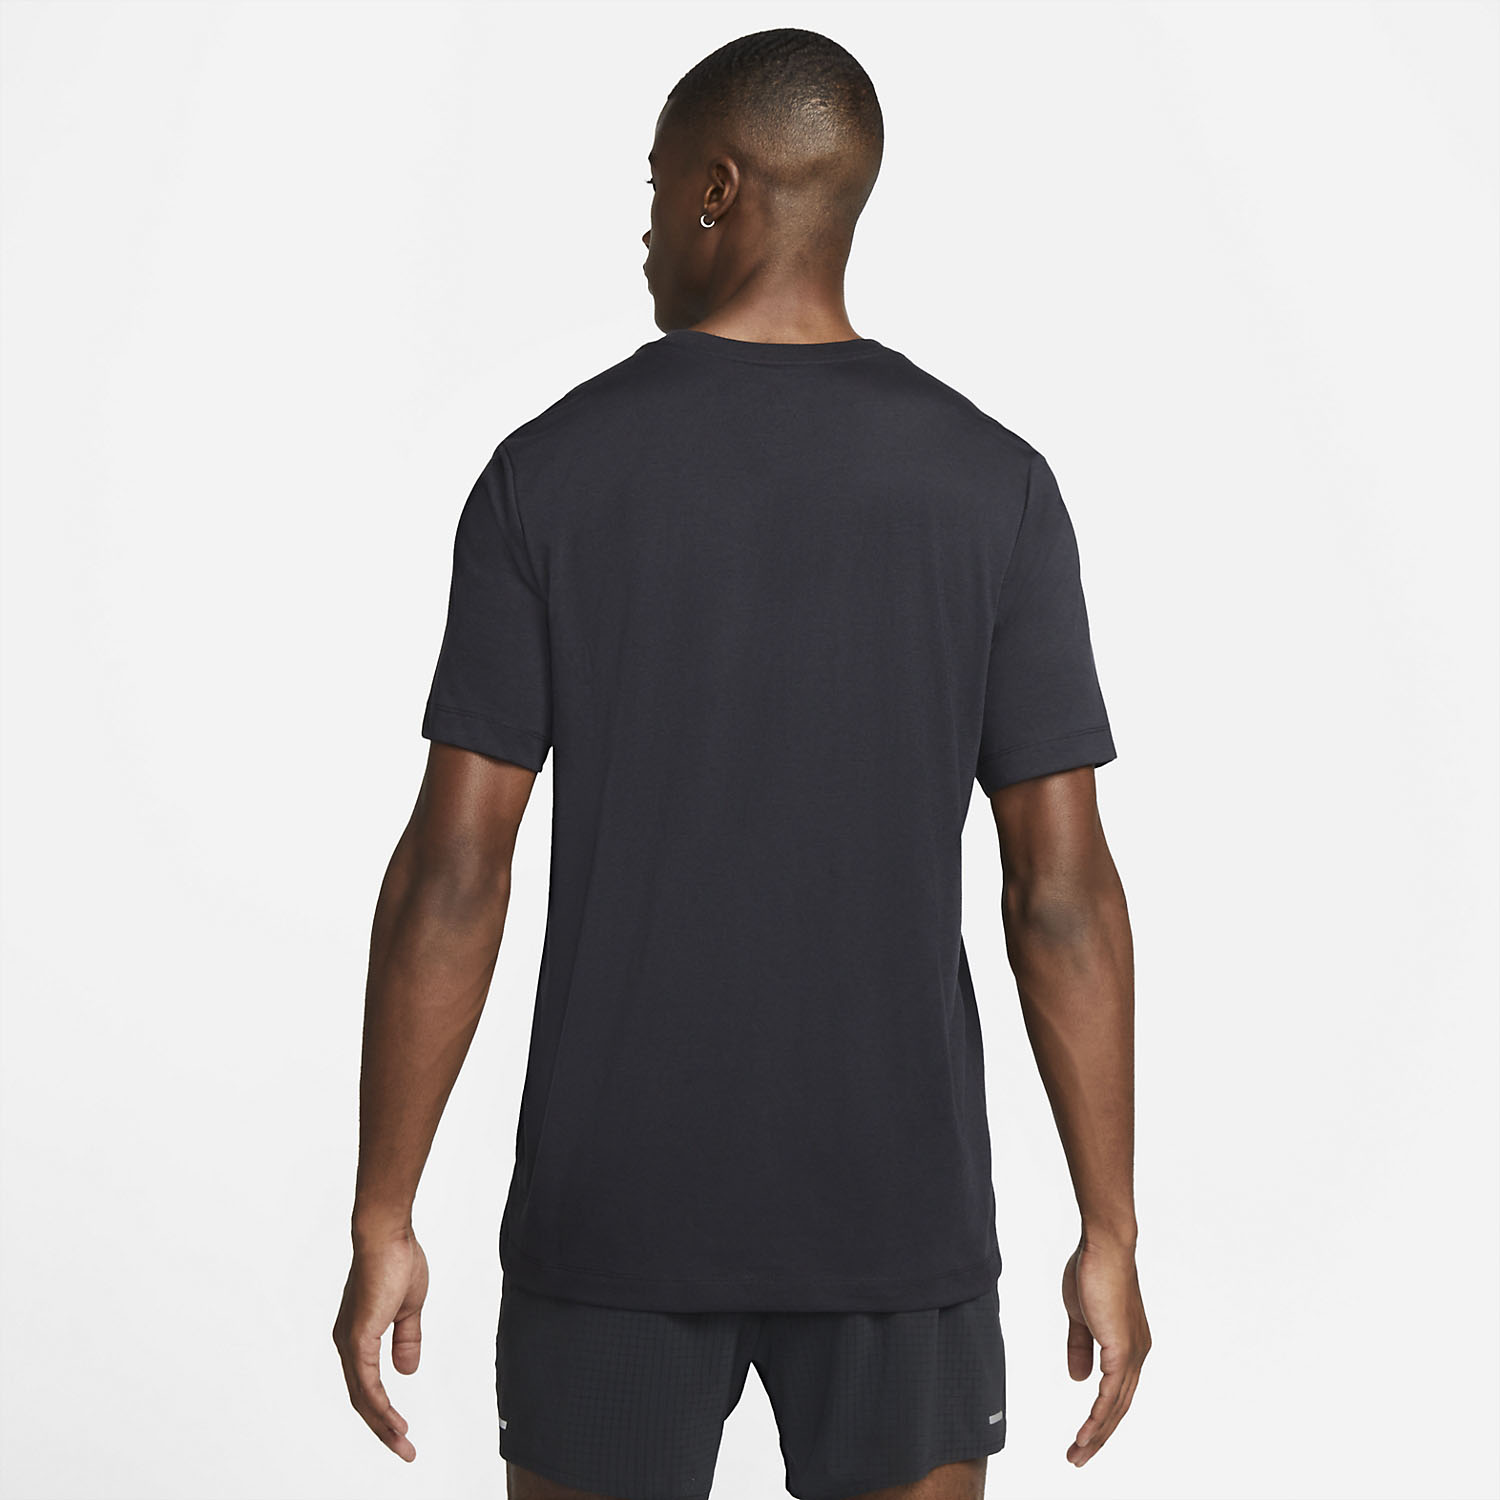 Nike Dri-FIT Off Road Men's Trail Running T-Shirt - Black